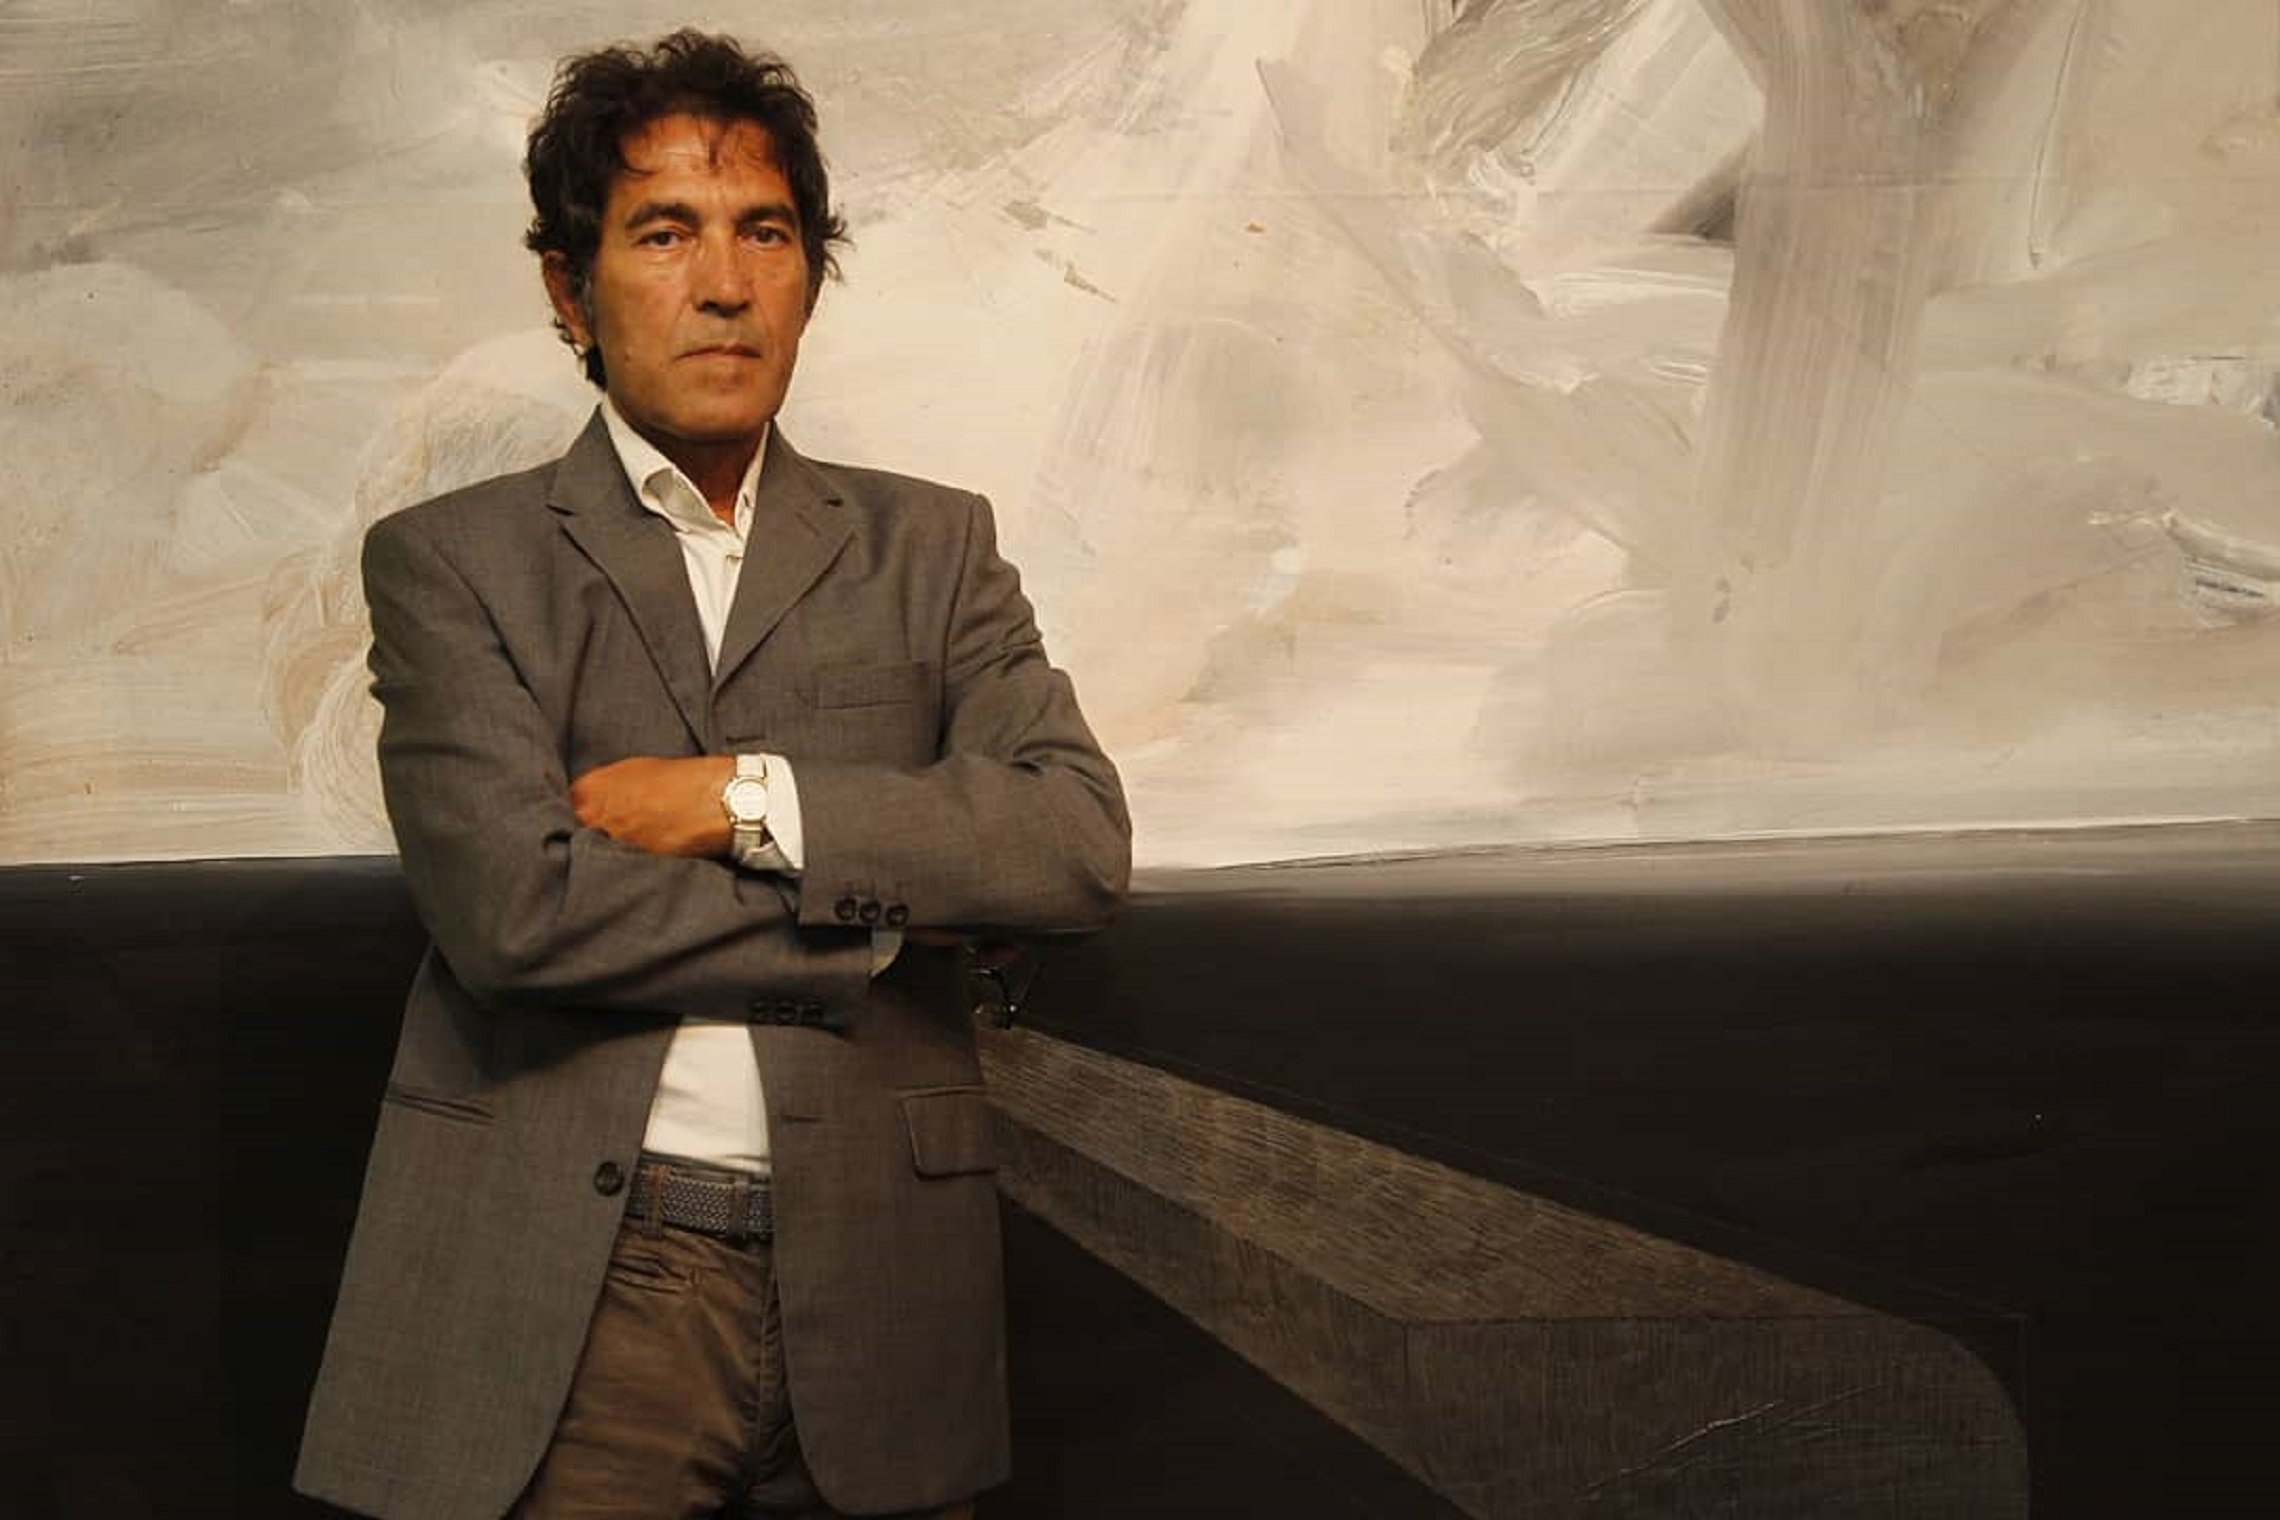 El artista Salvatore Garau vende una escultura invisible por 15.000 euros